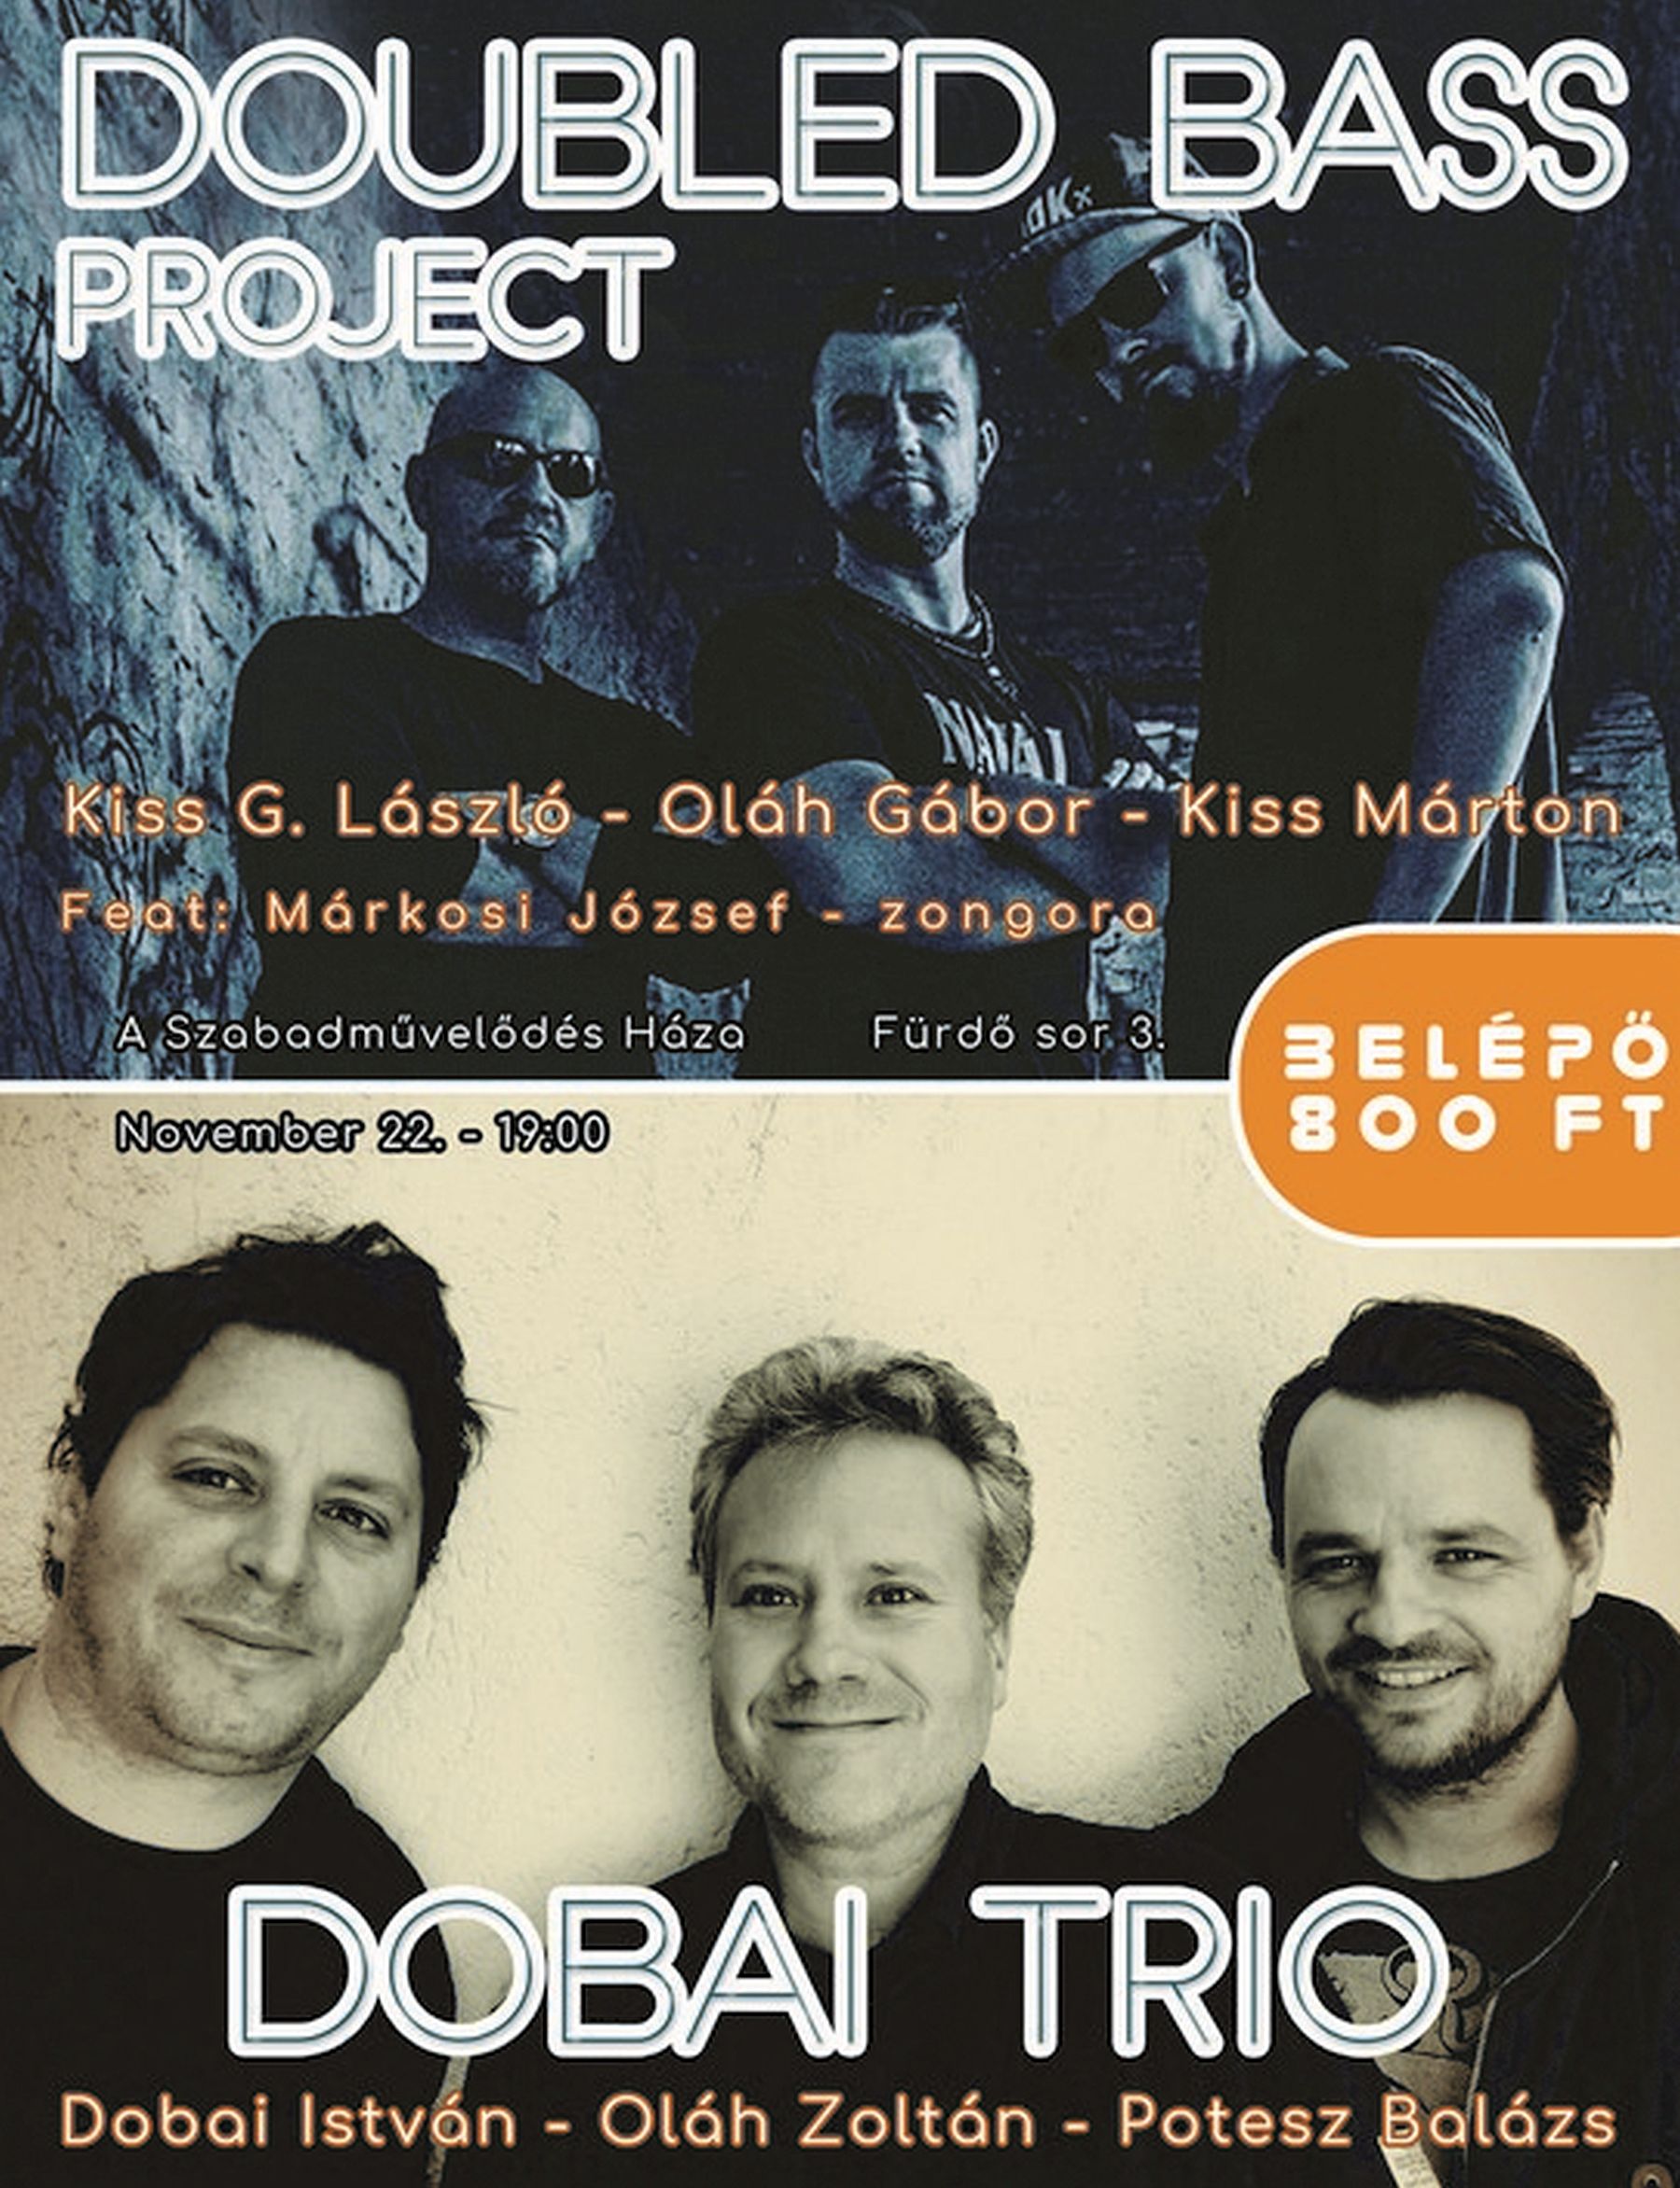 A Doubled Bass Project és a Dobai Trió koncertezik A Szabadművelődés Házában